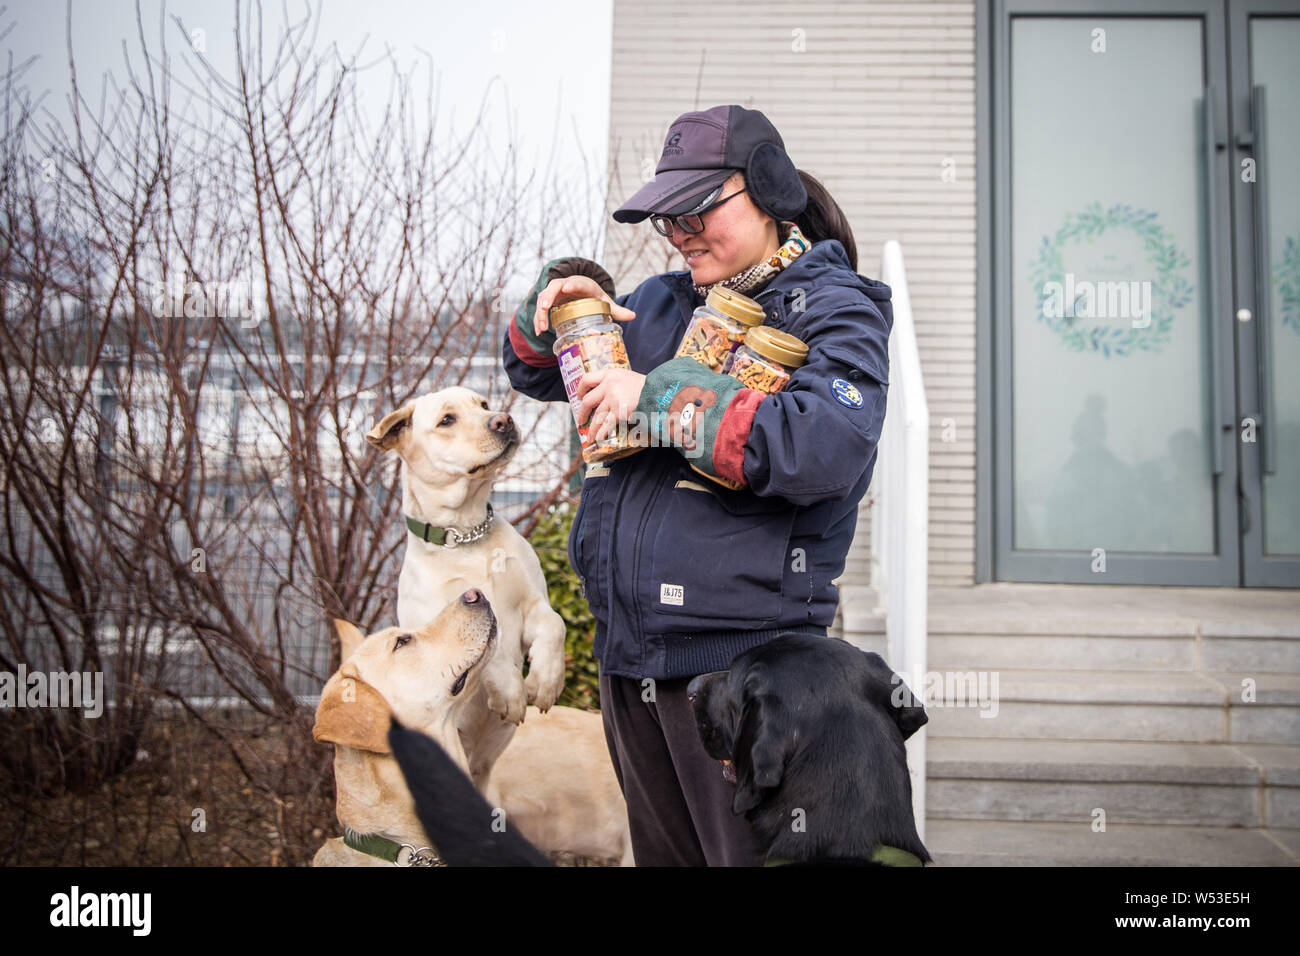 Chinesischen Führer Hundetrainer Wang Xin, die mit einem Doktorat in Psychologie an einer Universität in Japan studiert, sieht nach Hunde an der Ausbildung ba Stockfoto